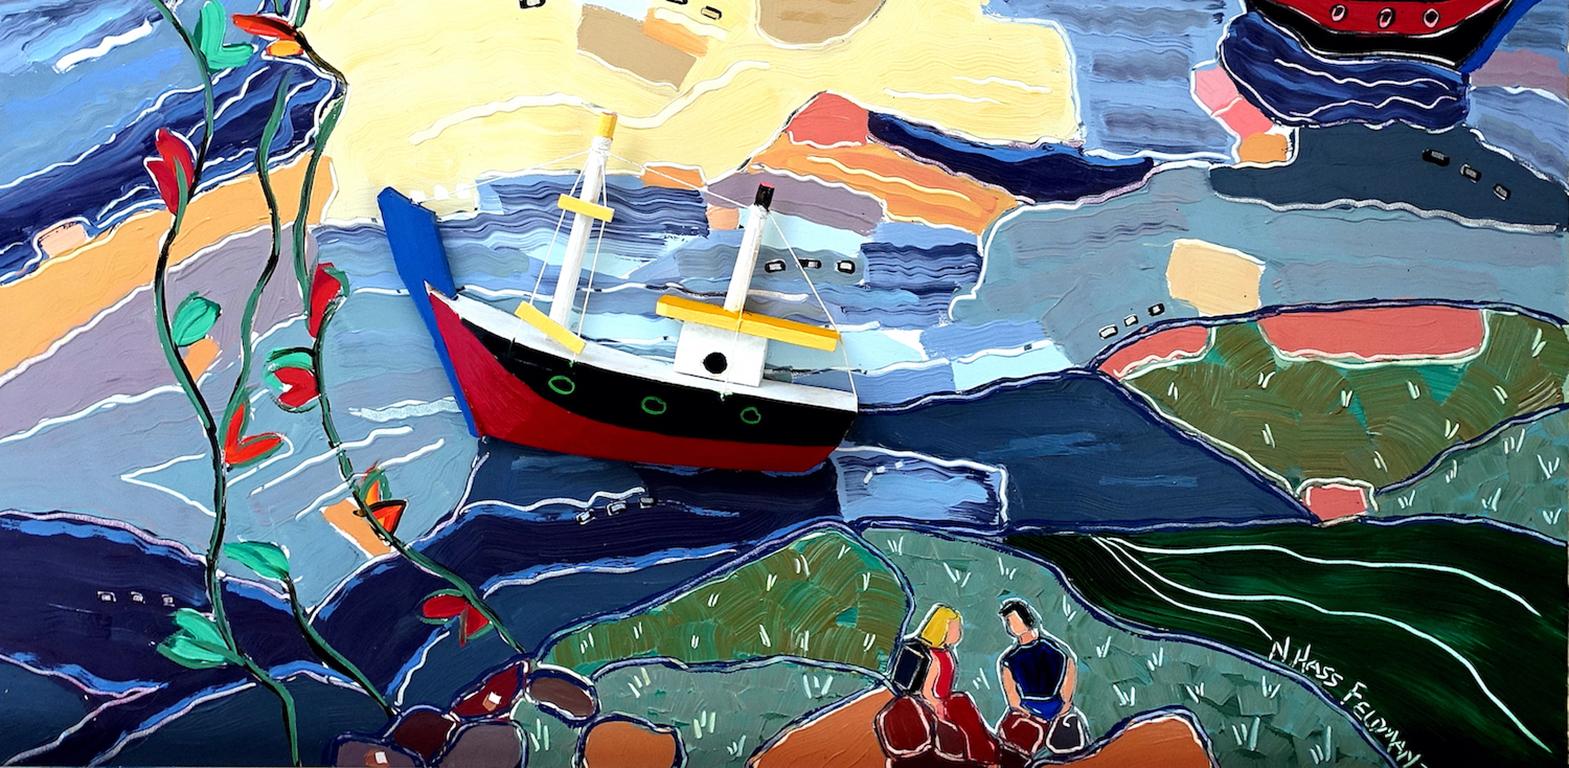 « Picnic in Valparaiso », paysage, ville, Chili, bateaux, bleu, rouge, peinture à l'huile - Contemporain Painting par Nan Hass Feldman